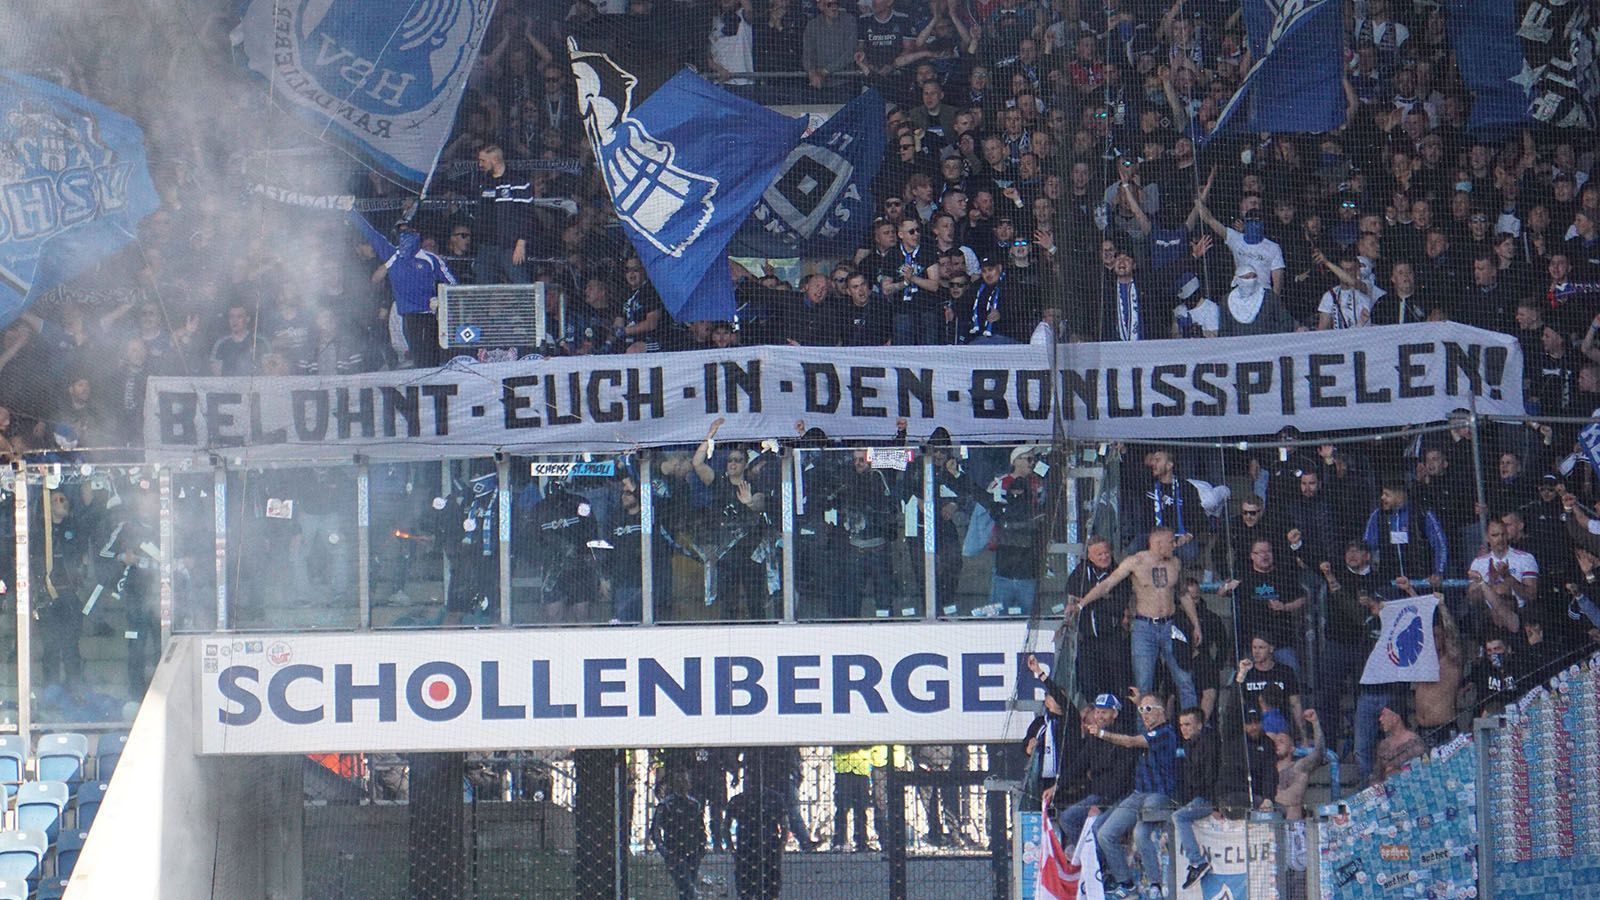 
                <strong>Hamburg kann Relegation! </strong><br>
                Zum dritten Mal nimmt der Hamburger SV an der "großen Relegation" teil. Bisher konnten die "Rothosen" beide Duelle für sich entscheiden. 2014 blieb man gegen Greuther Fürth, 2015 gegen den Karlsruher SC in der ersten Liga. In diesem Jahr nimmt der HSV zum ersten Mal als Zweitligist an der Relegation teil. In Hamburg wird man hoffen, dass "aller guten Dinge" auch wirklich drei sind.
              